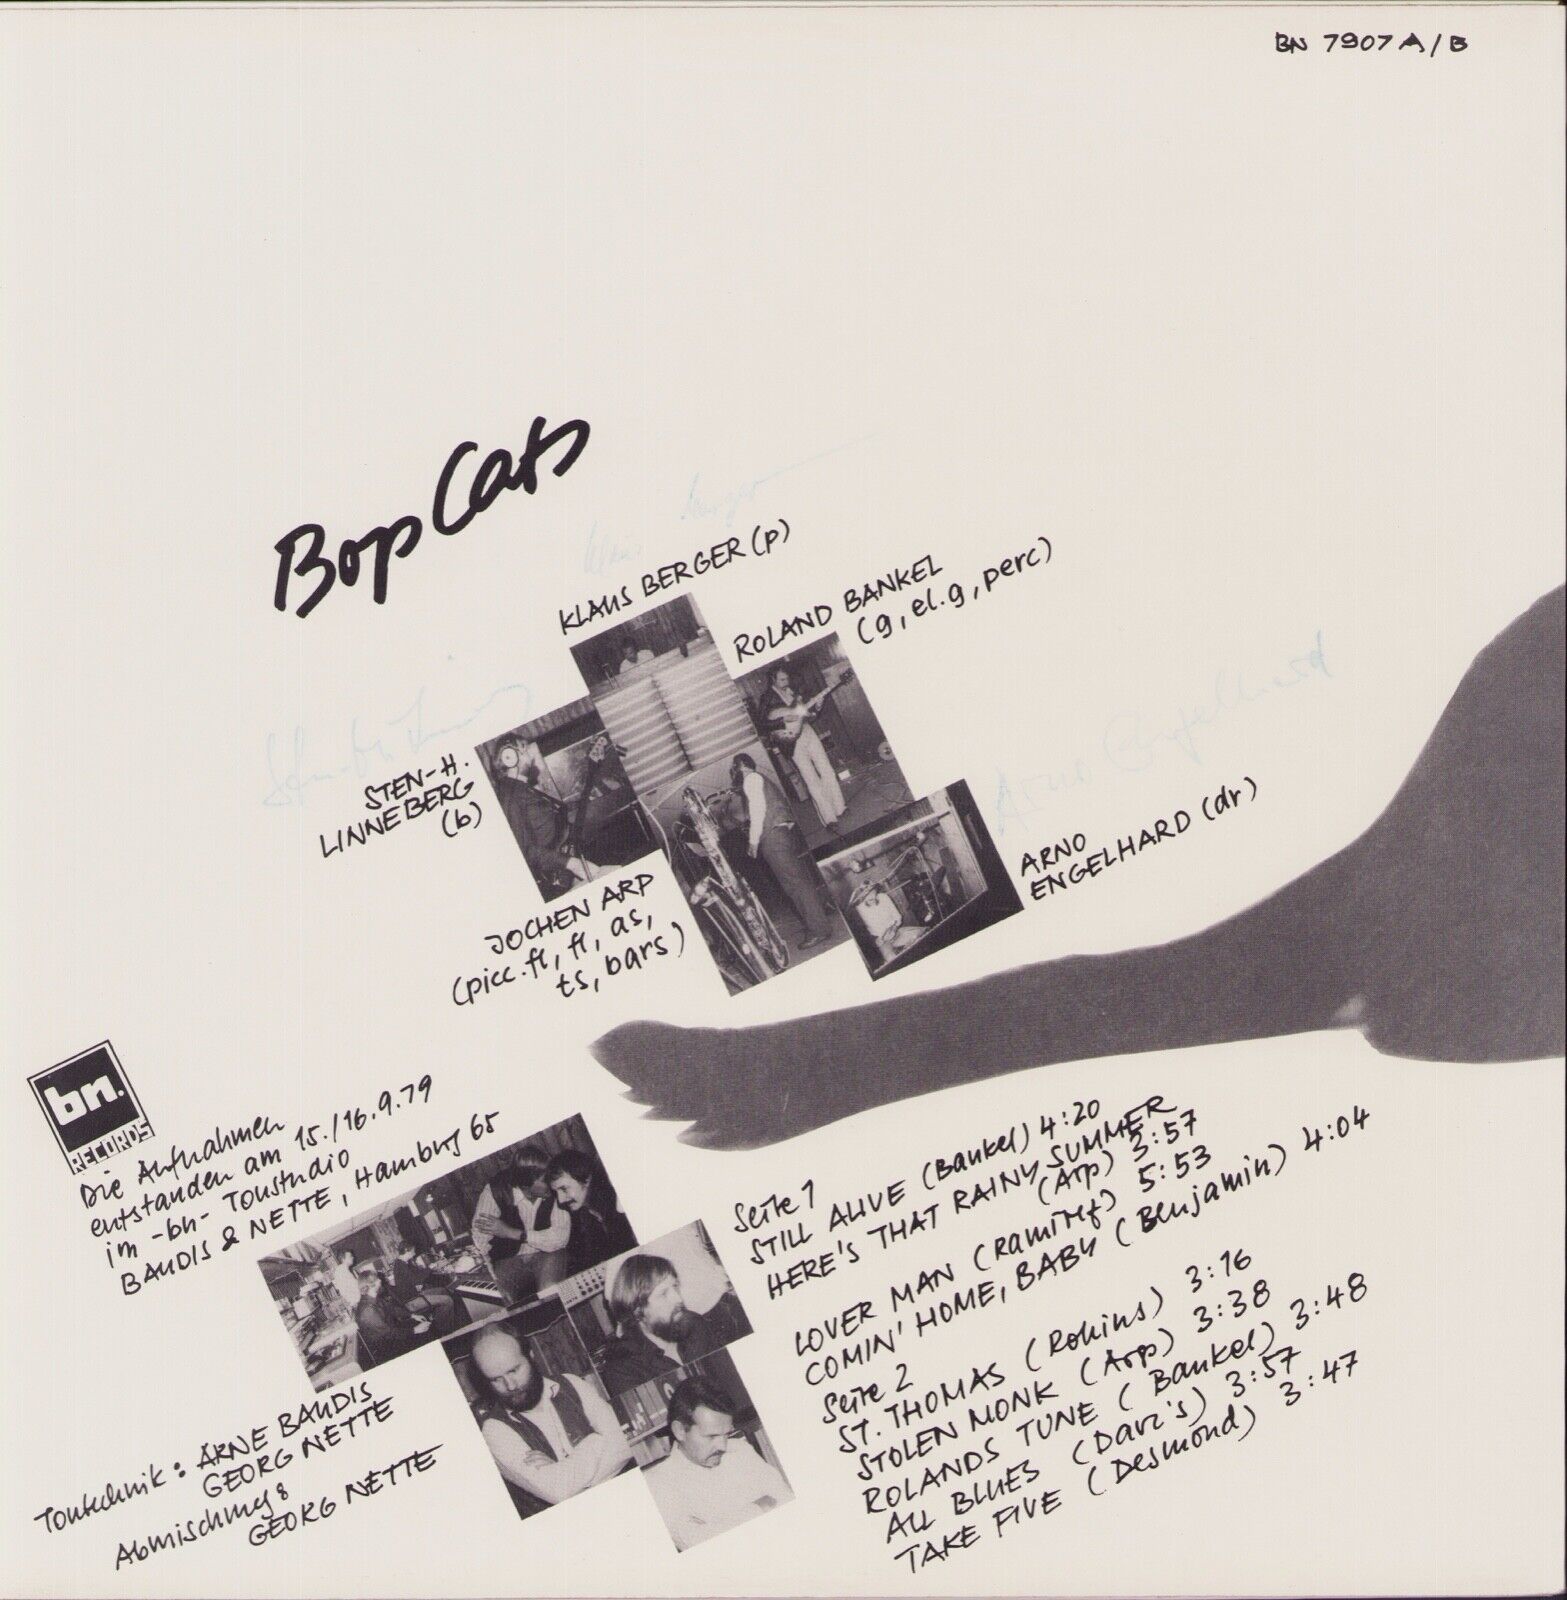 Bop Cats - Still Alive Vinyl LP